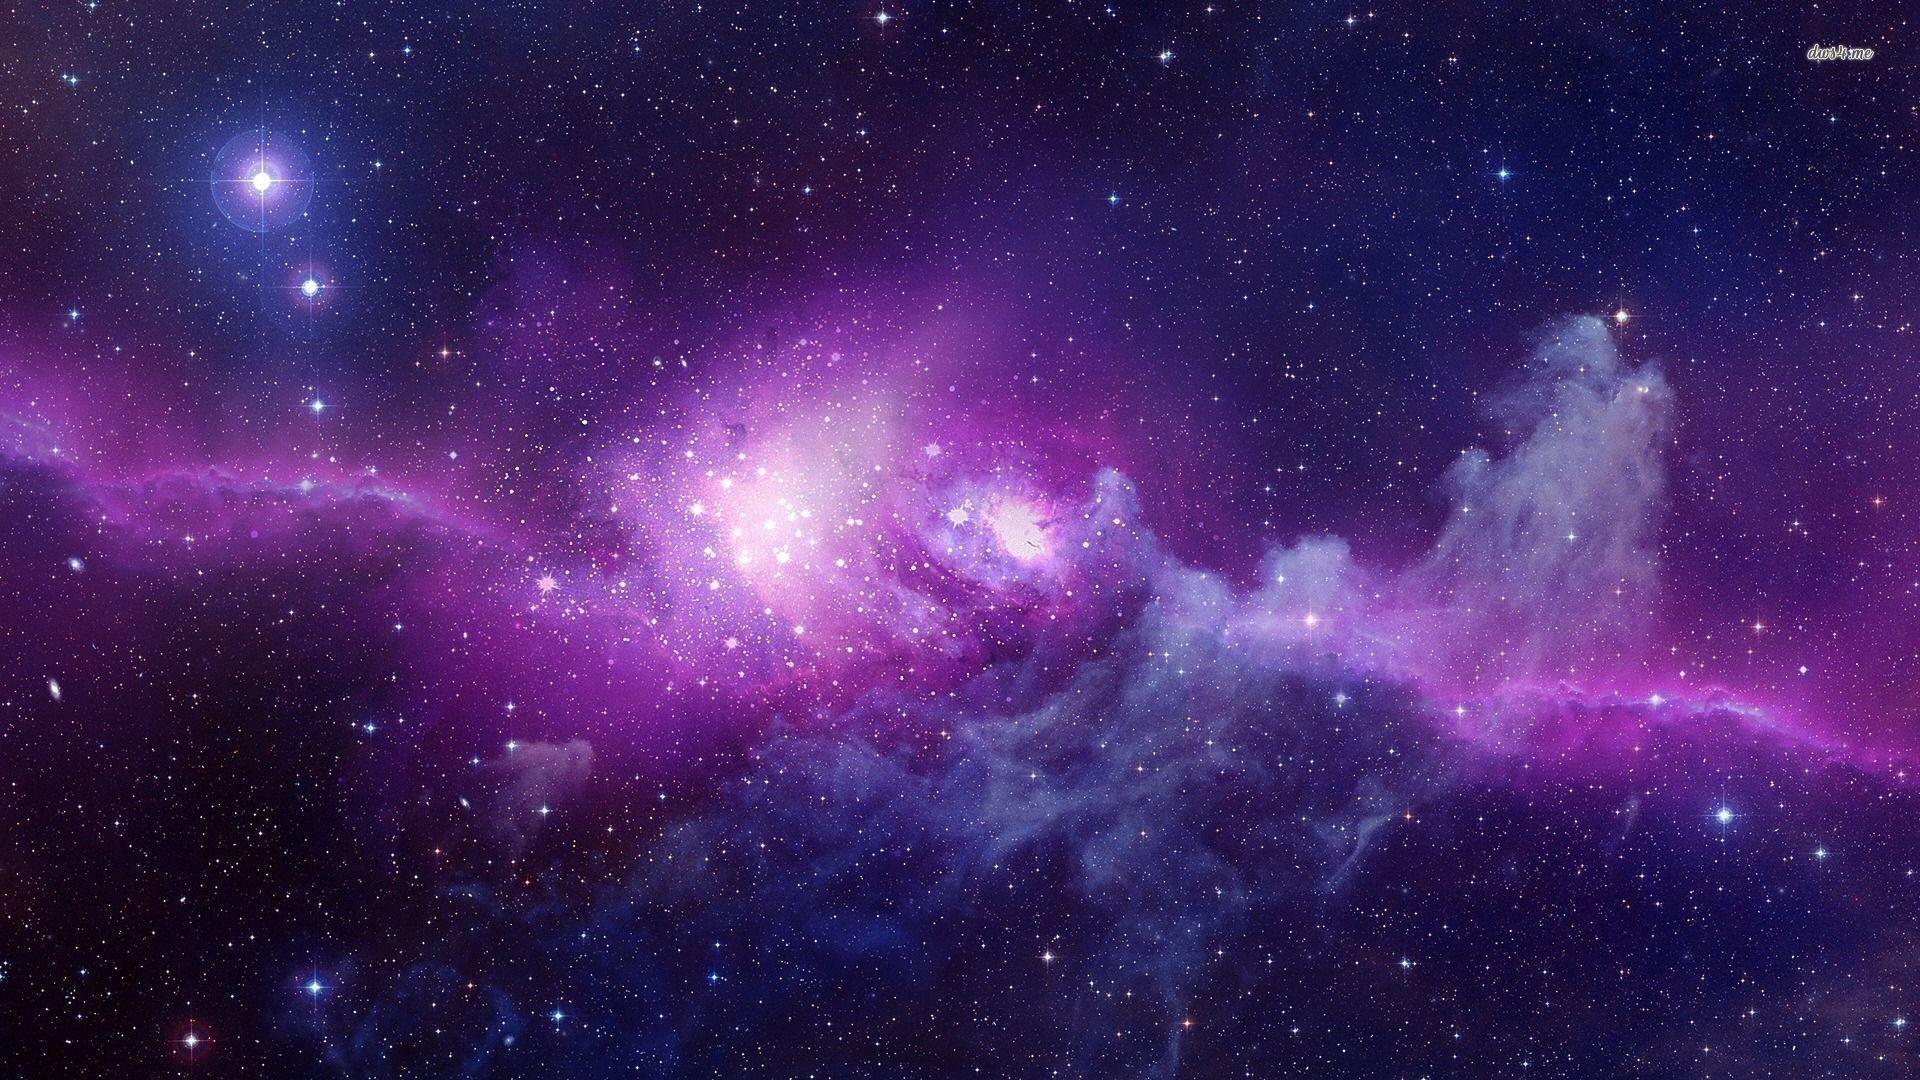 Thiên hà là một cải vật thể đẹp đẽ, uốn lượn, giản đồ phức tạp và cũng là một trong những hiện tượng tuyệt vời của vũ trụ. Hãy cùng tham gia khám phá và tìm hiểu khoa học về thiên hà thông qua bức ảnh độc đáo này.